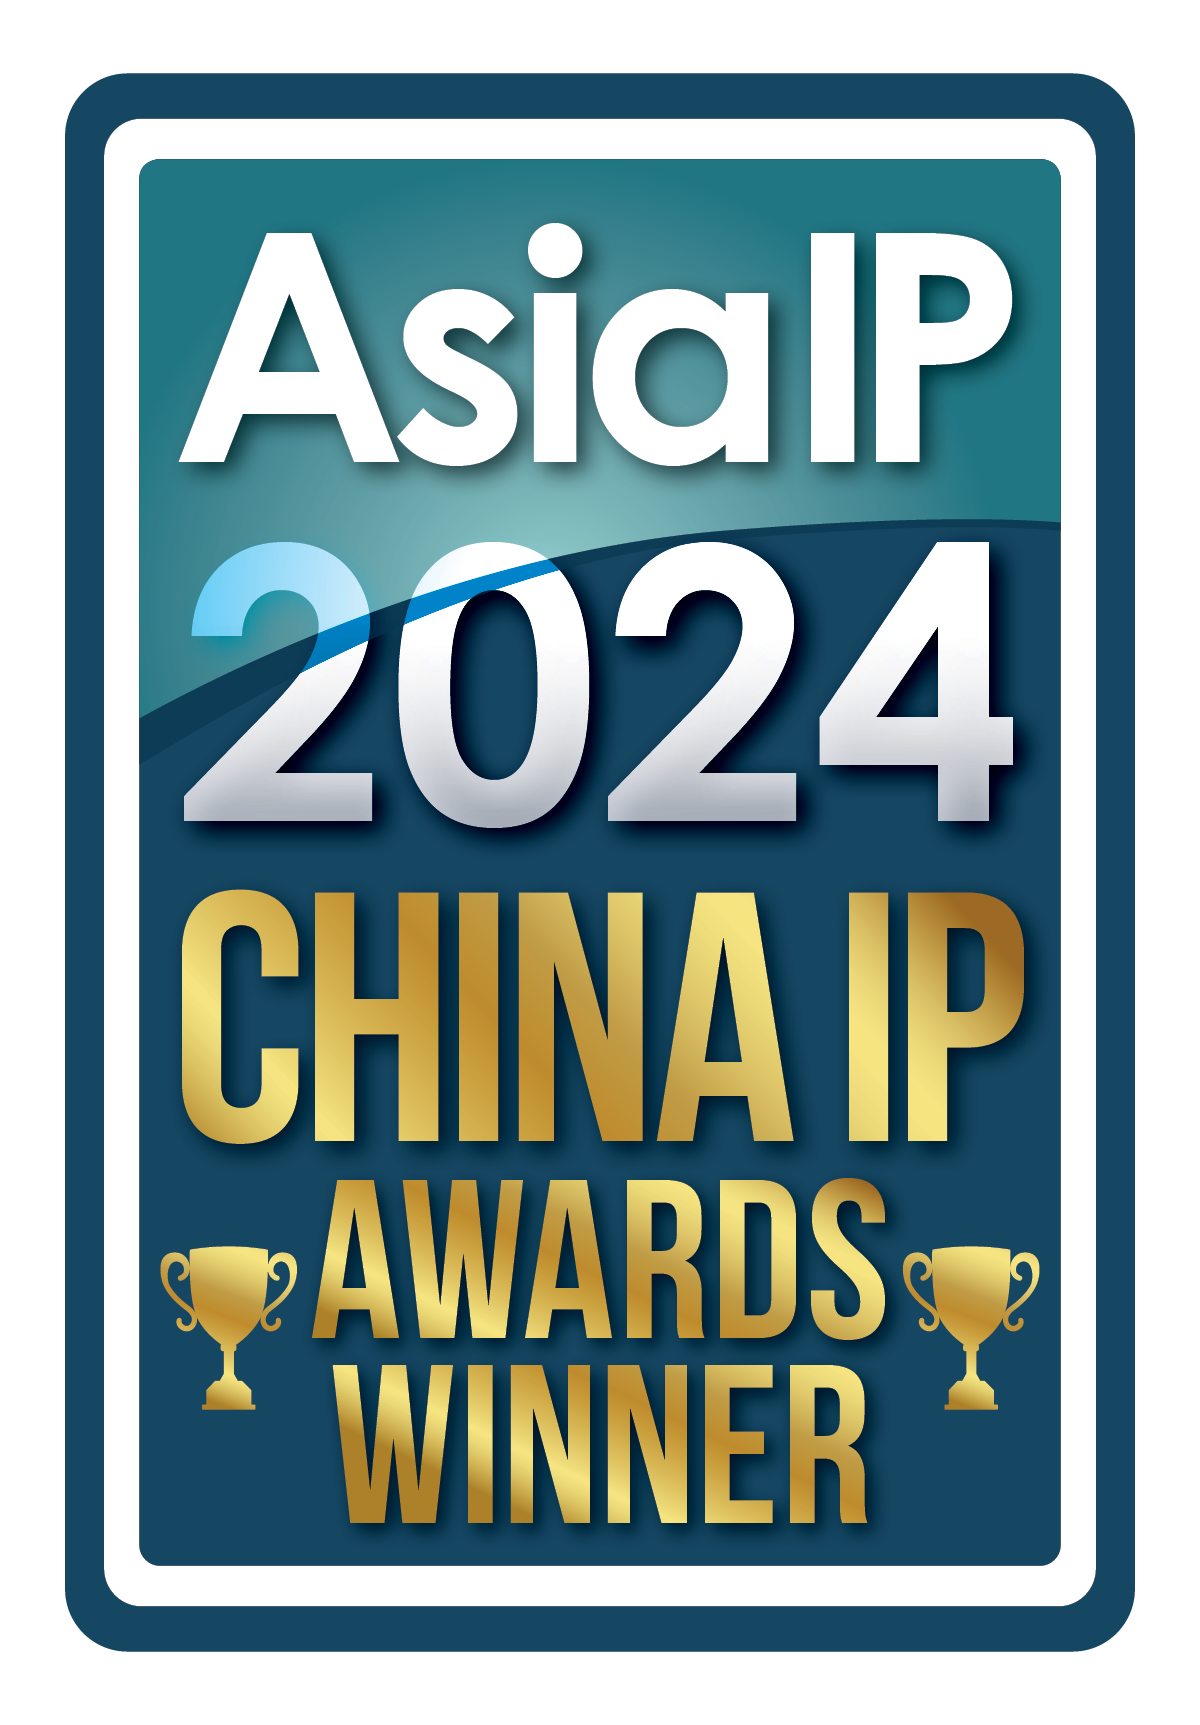 Asia IP 2024 China IP Awards Winner logo.png